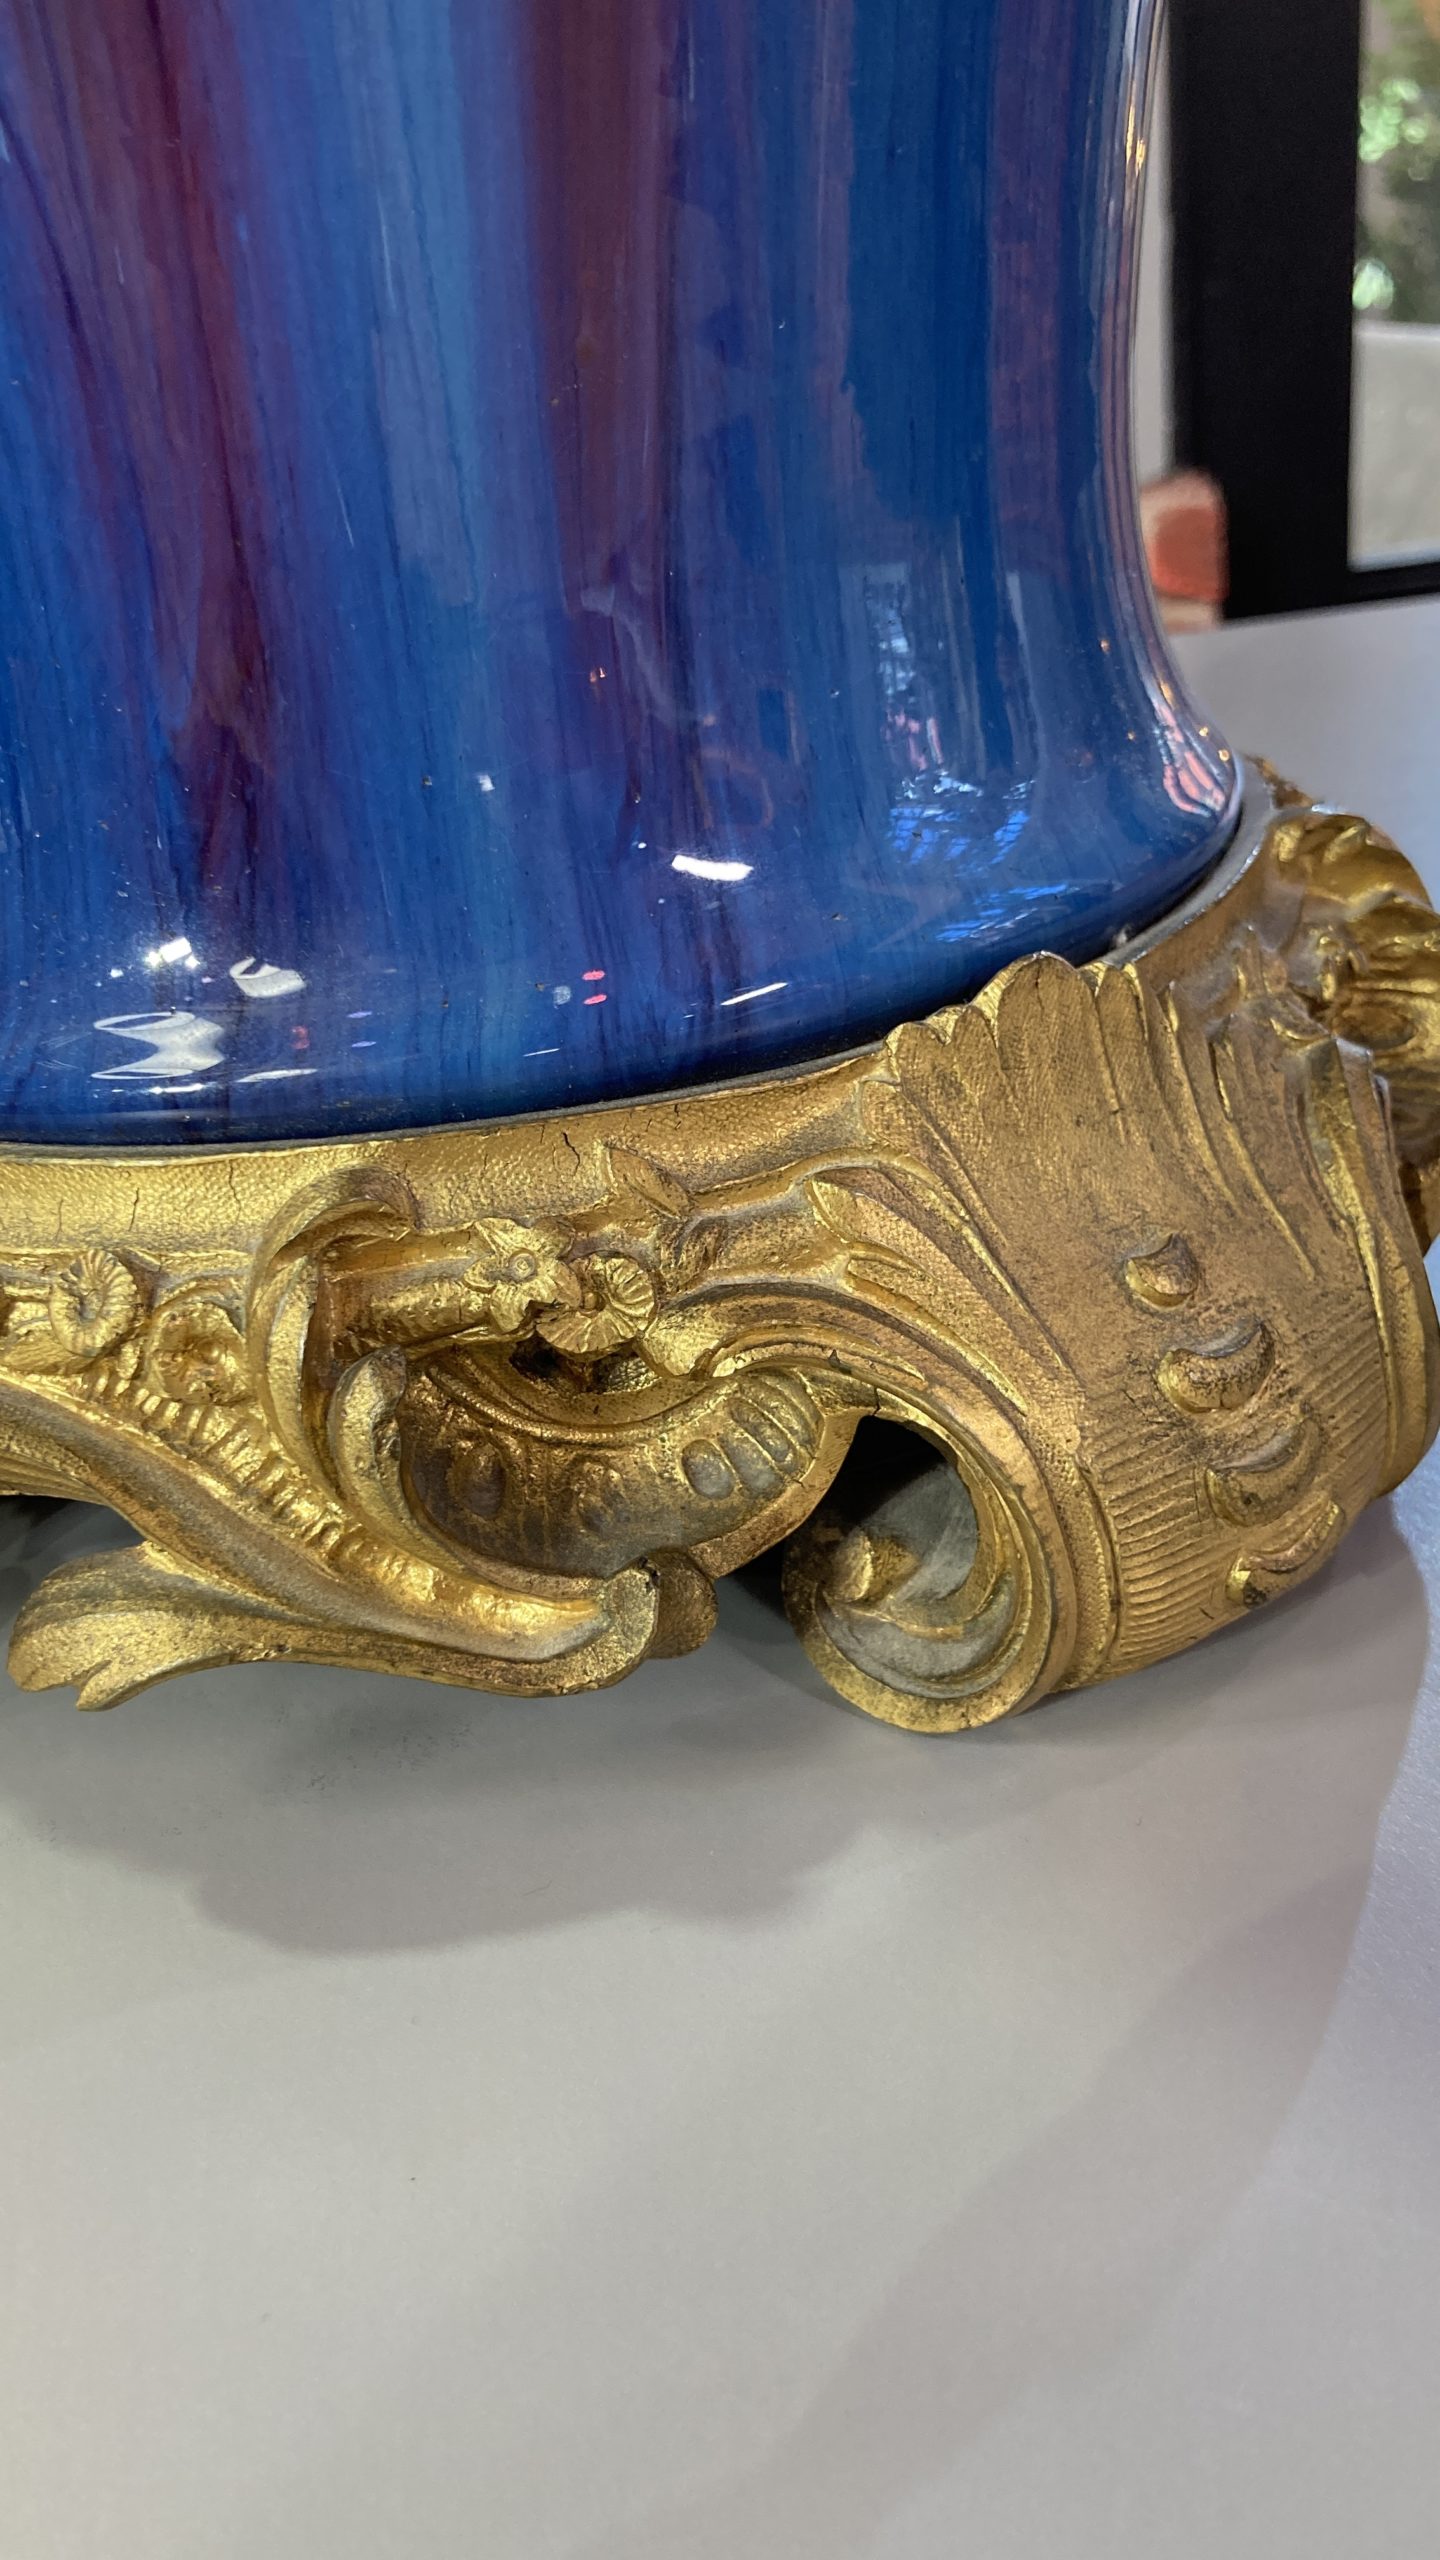 vase-cérémique-bleu-rouge-bronze-eugène-baudin-wolf-louis-XVI-aurore-morisse-antiquaire-décoration-antiquité-objet-ancien-liège-paris-affaire-conclue-marchad-art-antiques8